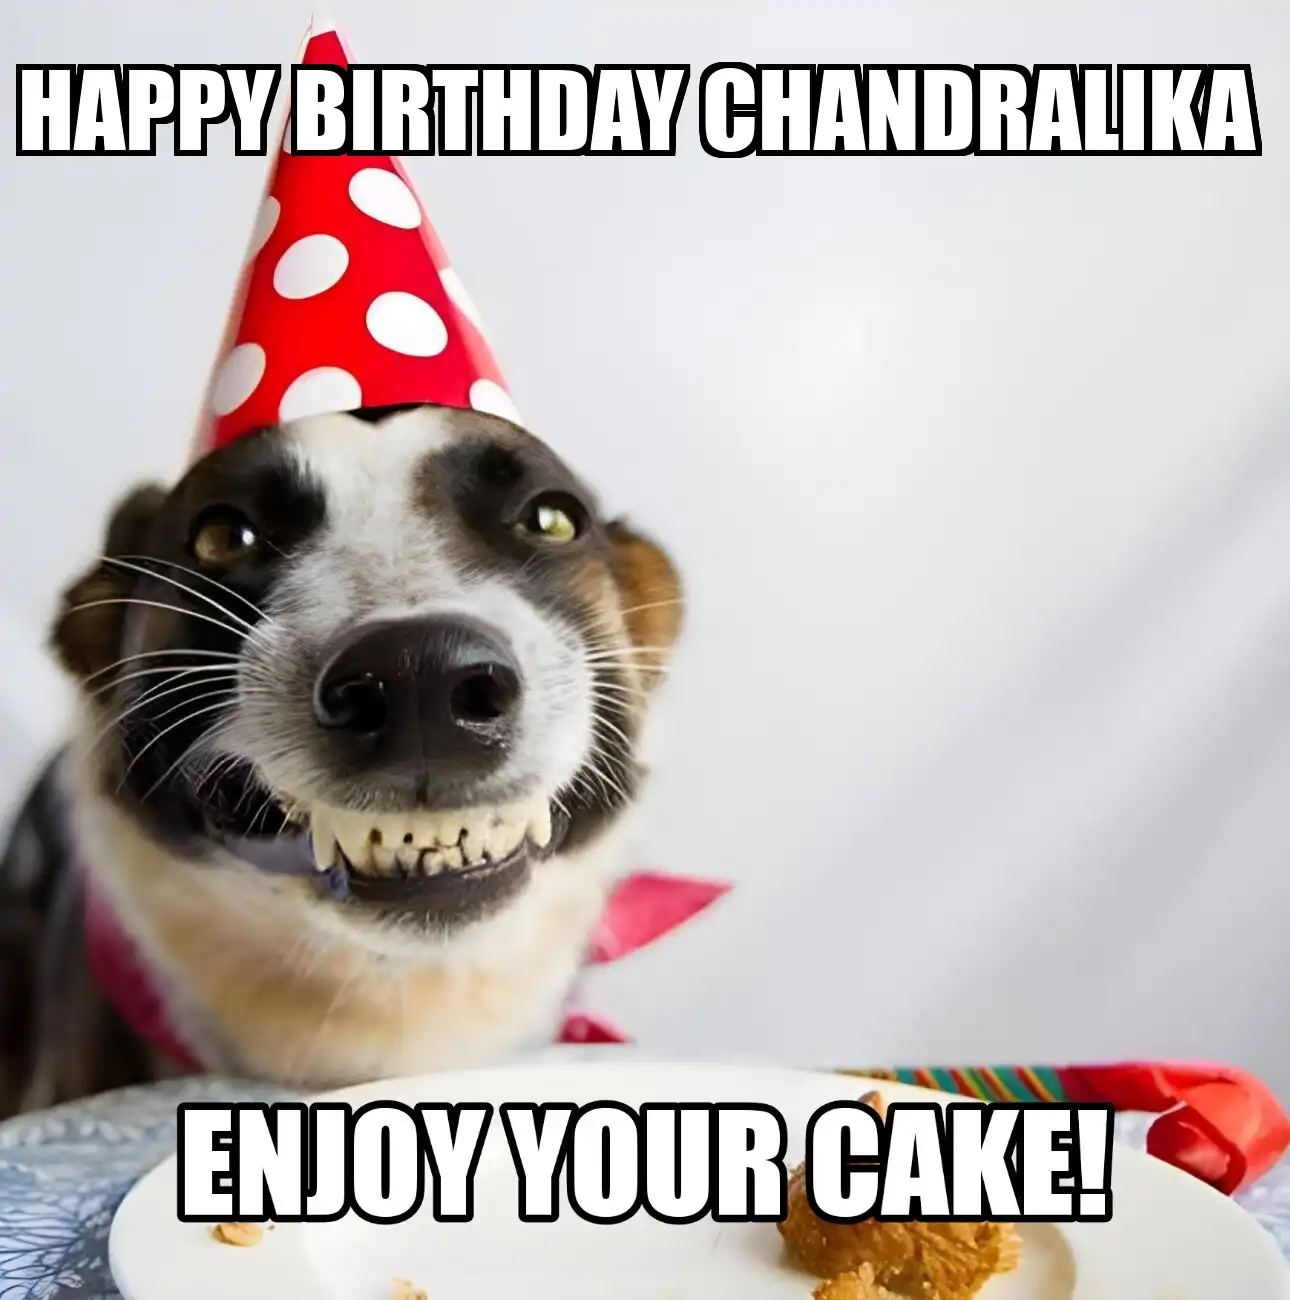 Happy Birthday Chandralika Enjoy Your Cake Dog Meme